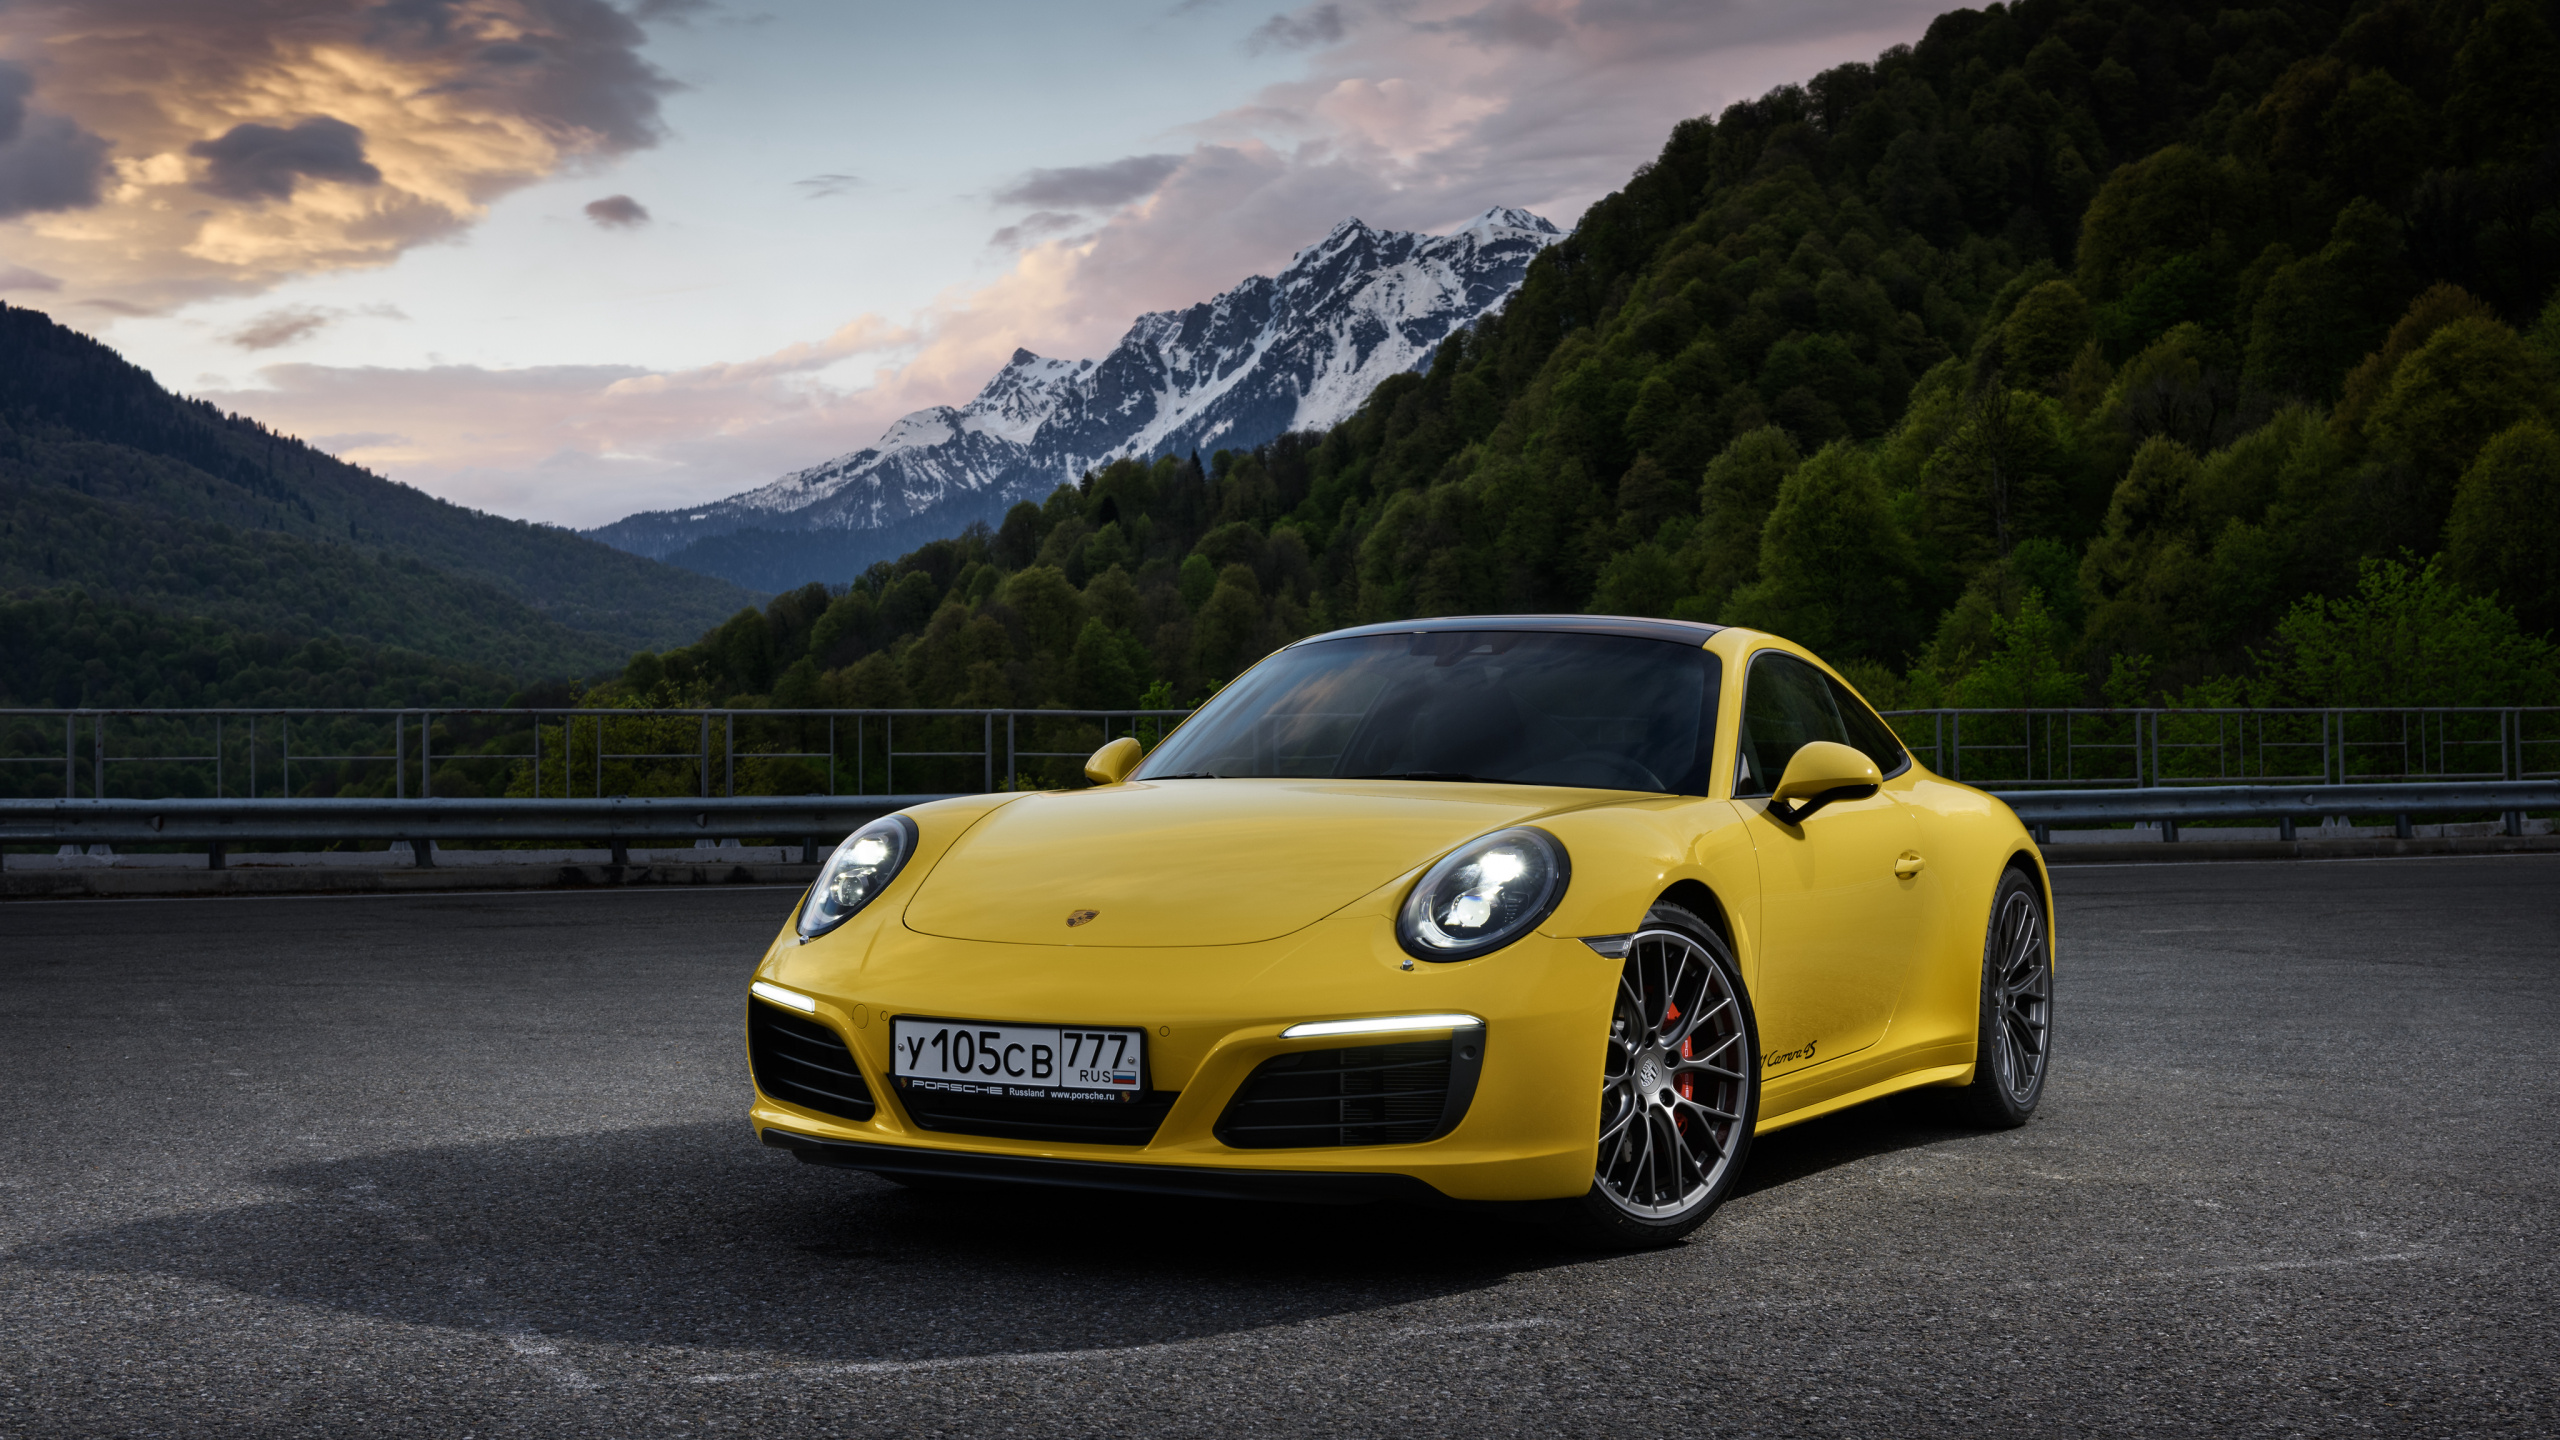 Porsche 911 Amarillo en la Carretera Cerca de la Montaña Durante el Día. Wallpaper in 2560x1440 Resolution